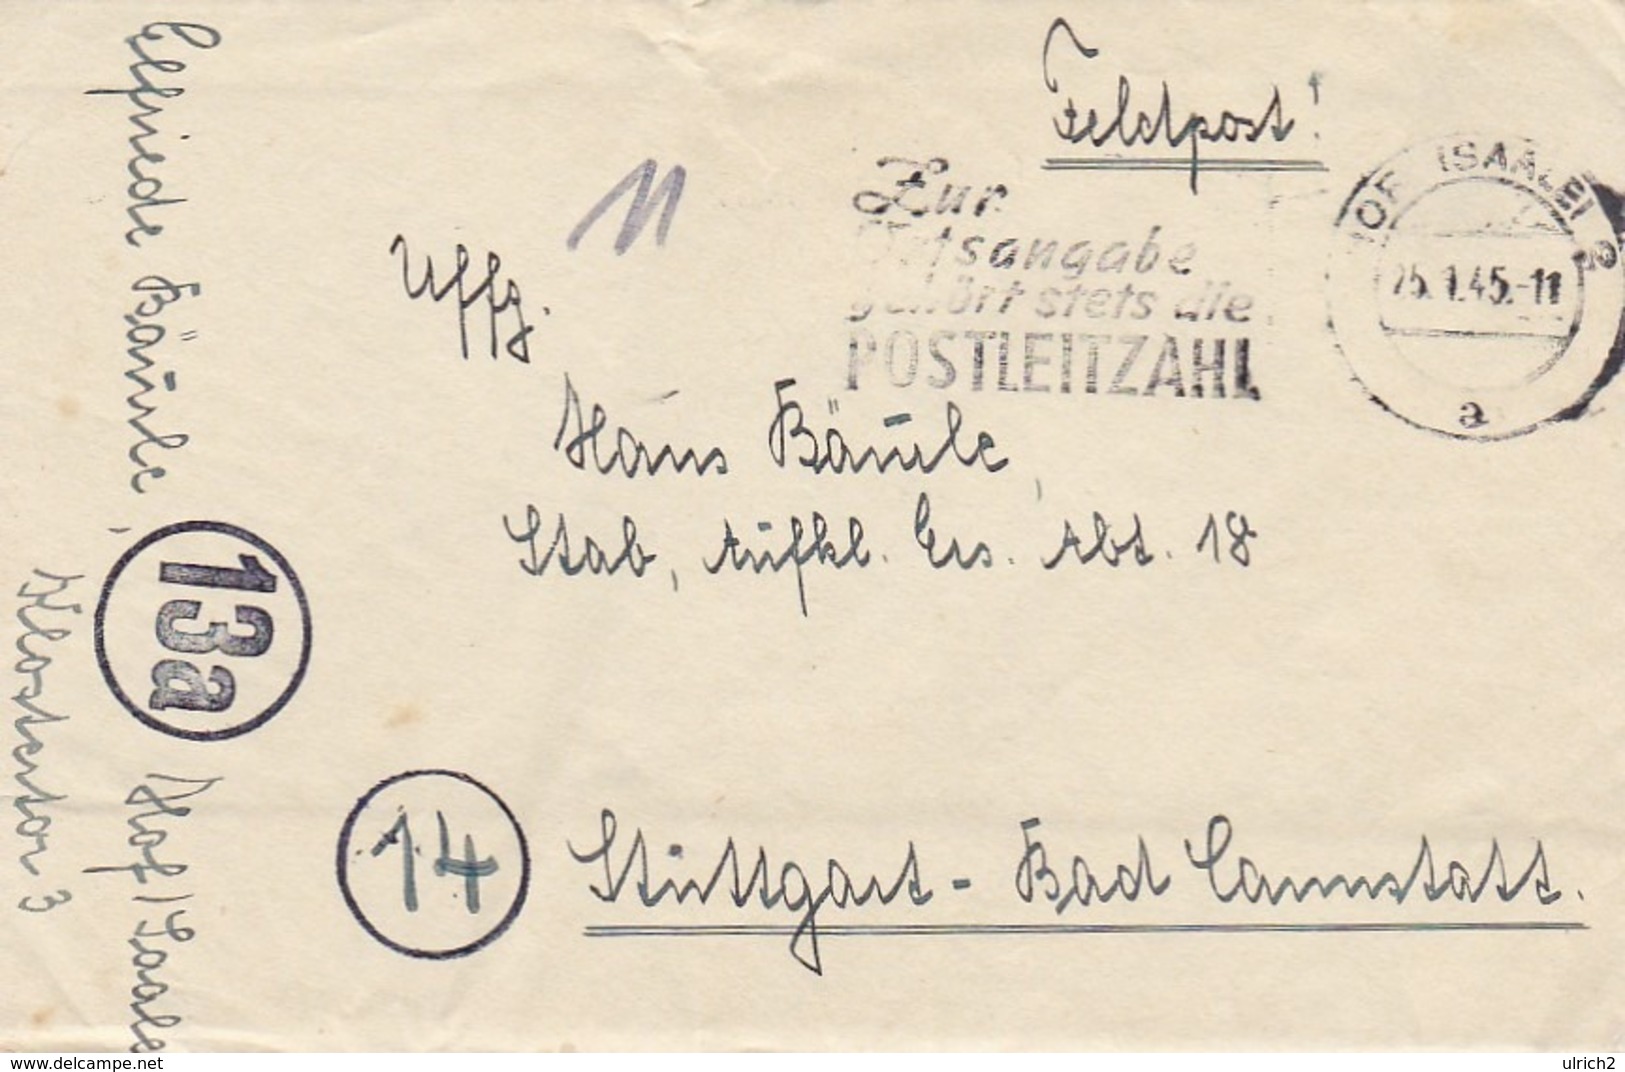 Feldpost Hof (Saale) Nach Stuttgart Aufkl. Ers. Abt. 18 - Werbestempel Postleitzahl - 1945 - Mit Inhalt (44464) - Storia Postale